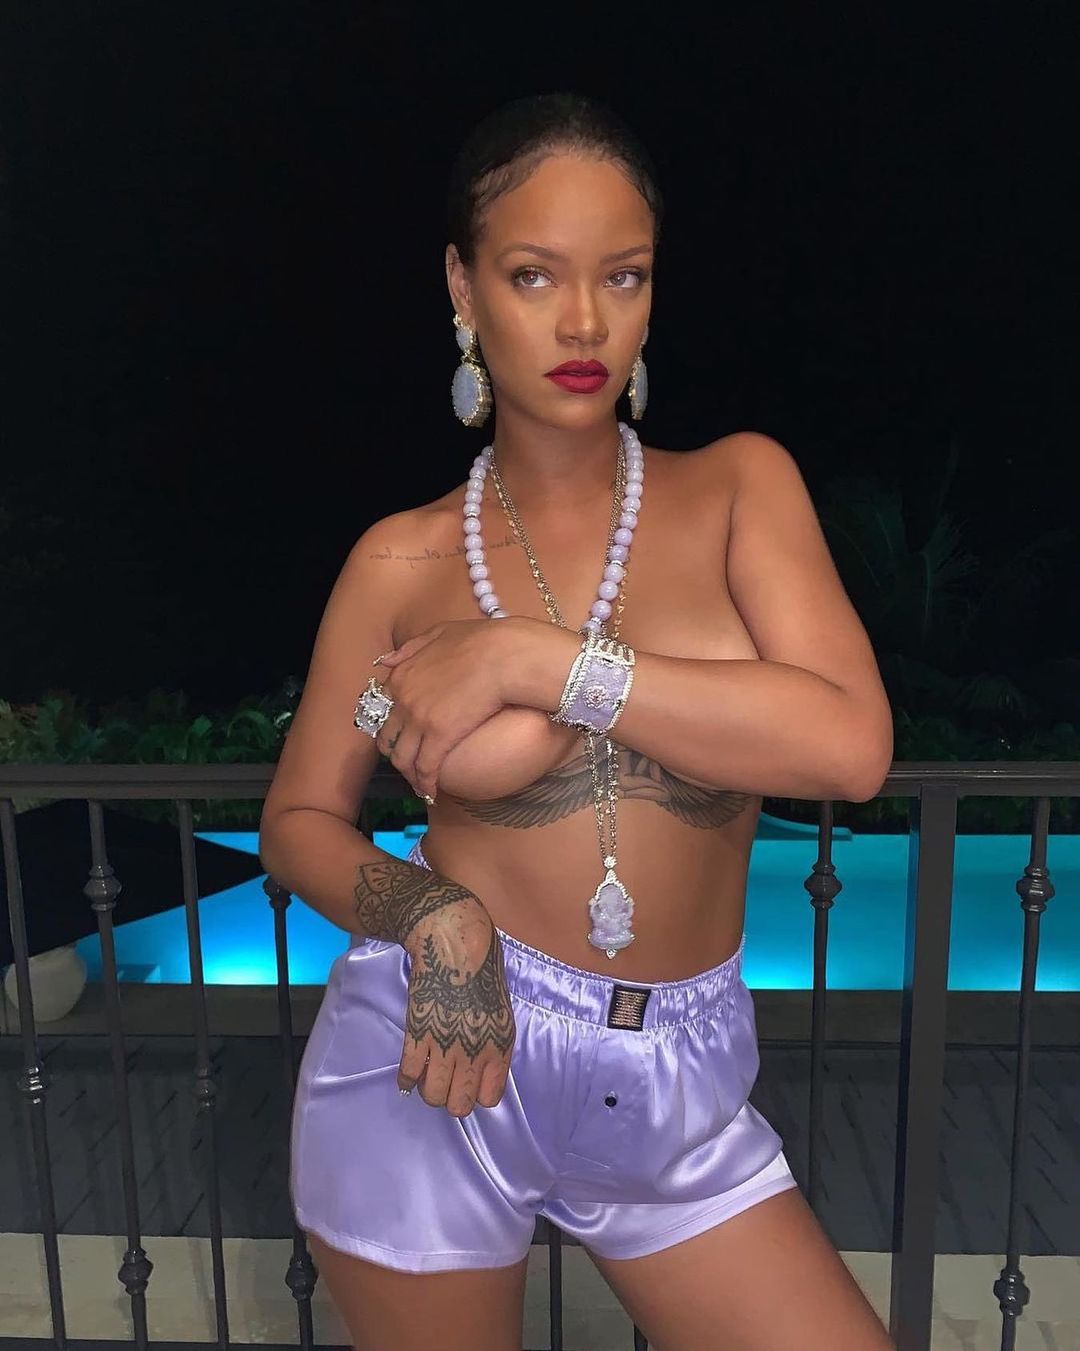 A$AP Rocky, Rihanna için hayatımın aşkı dedi